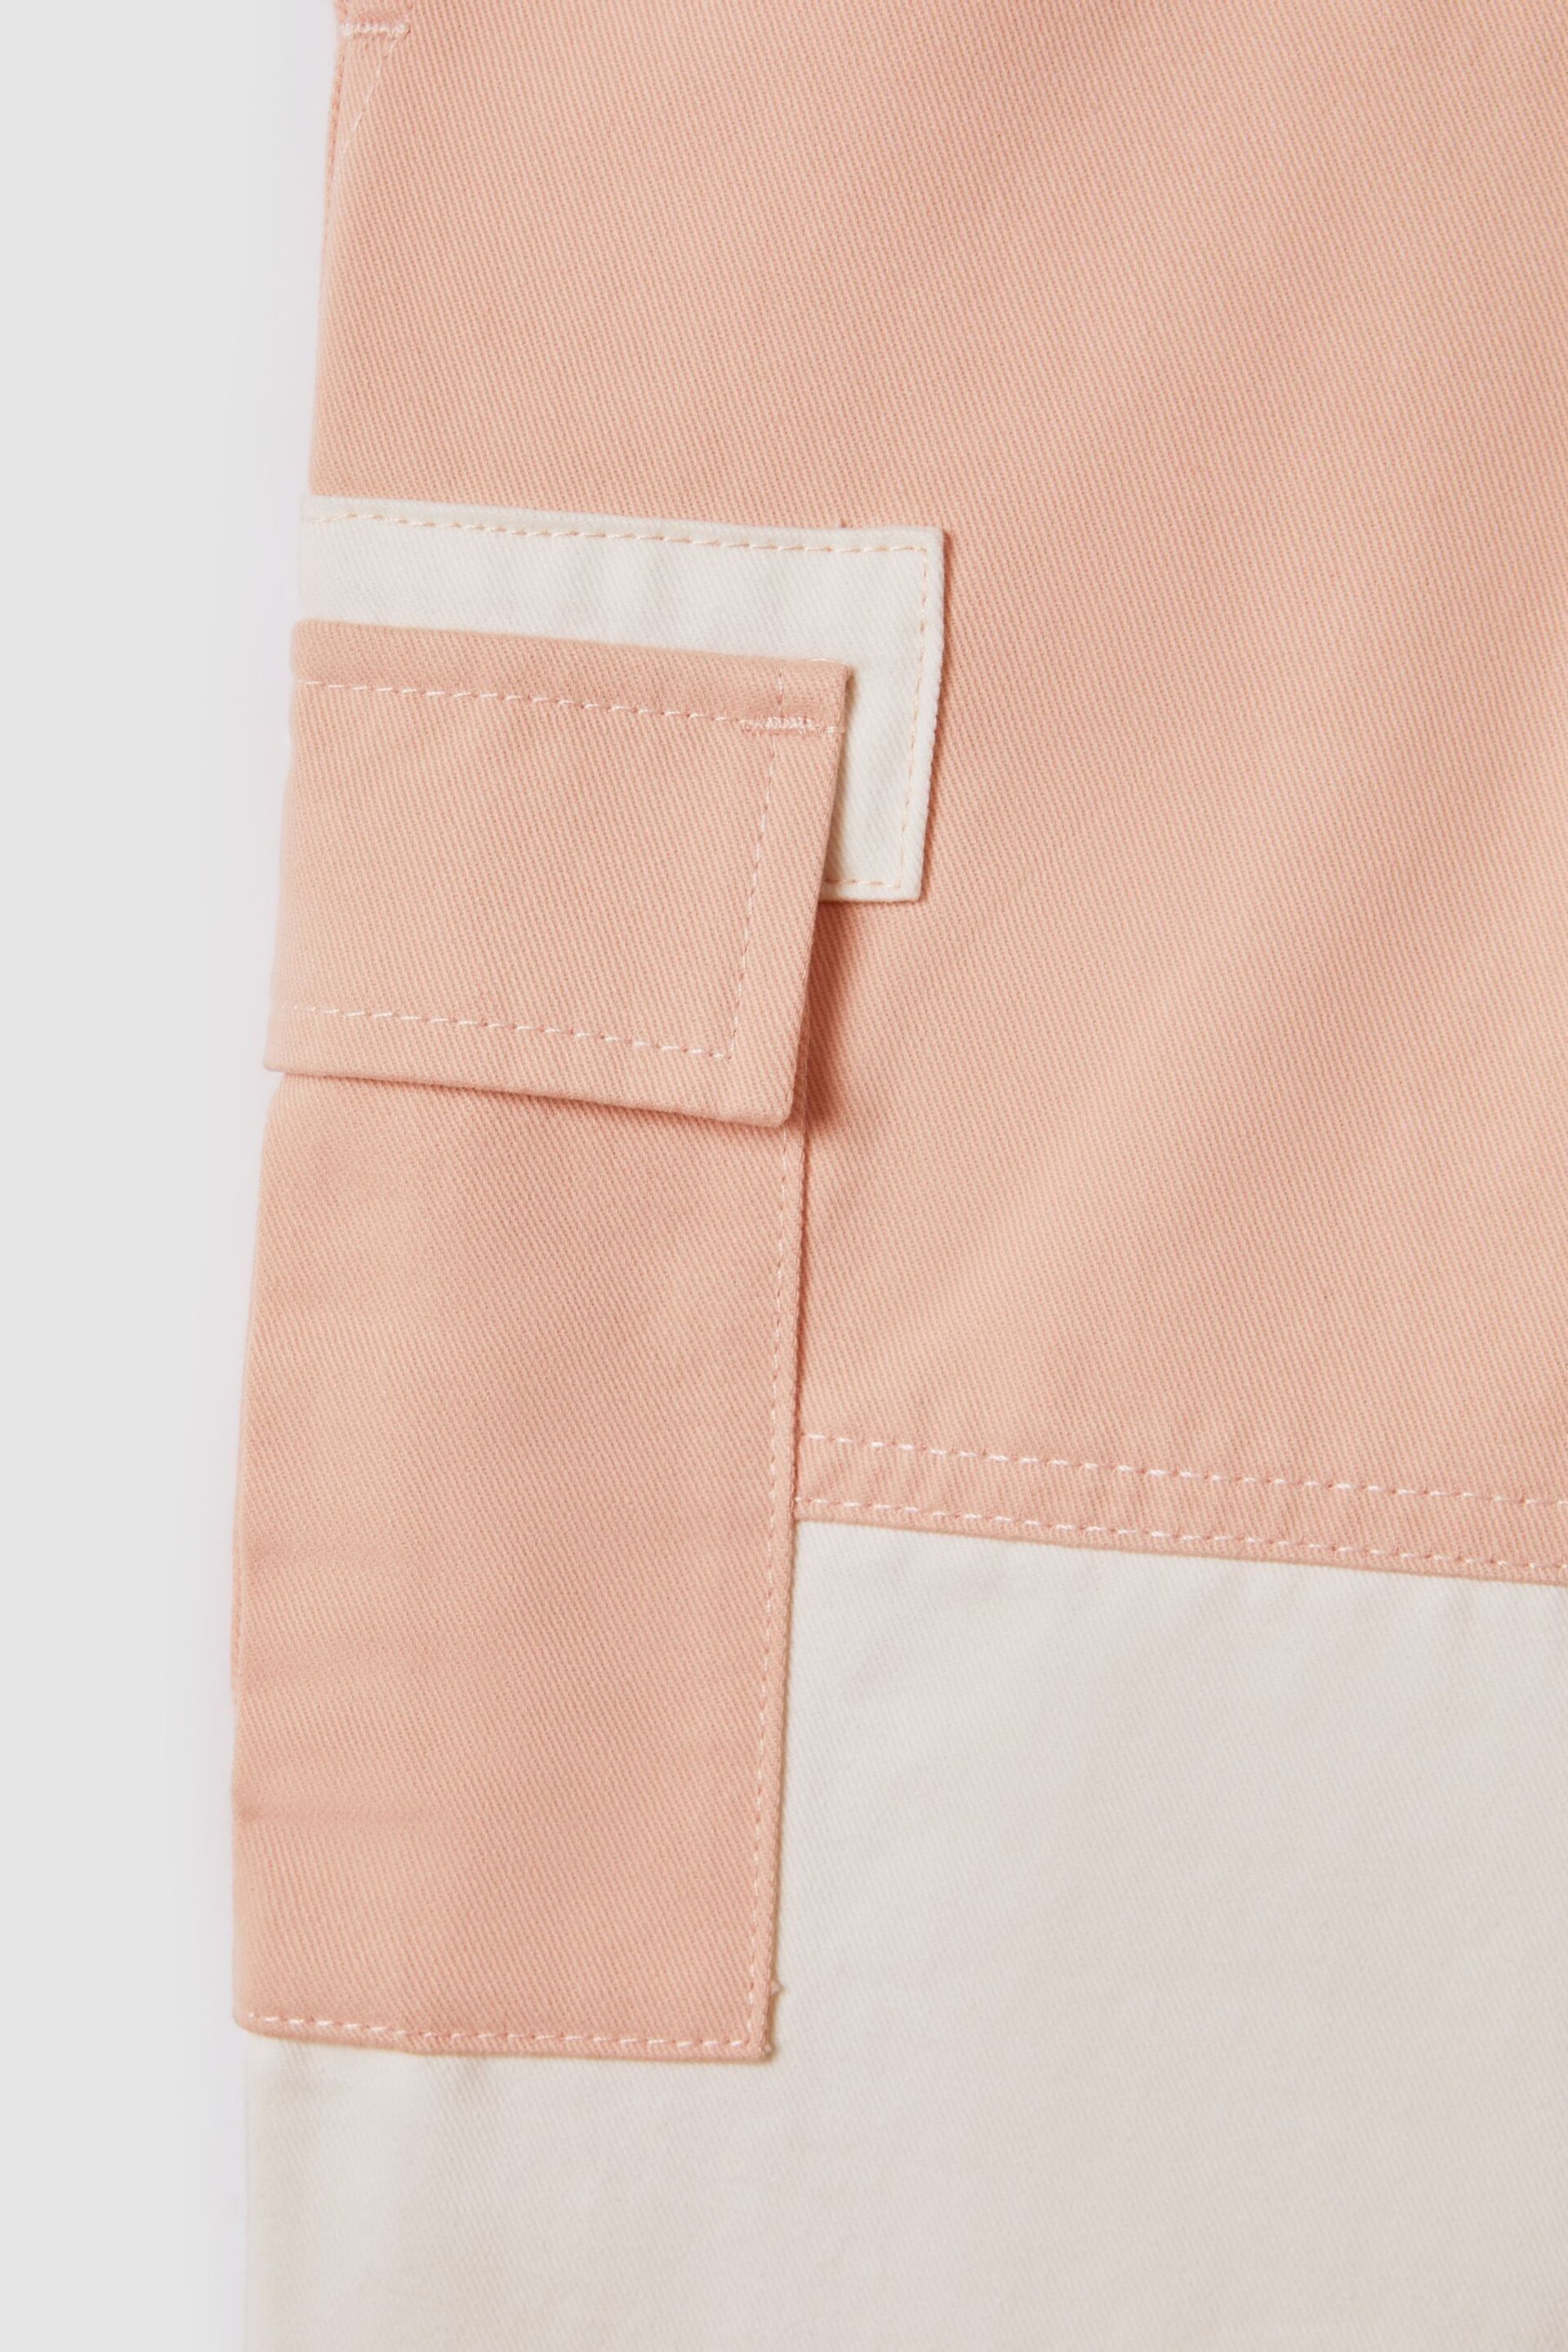 Reiss Pink Adalia Senior Colourblock Elasticated Cargo Jeans - Image 6 of 6